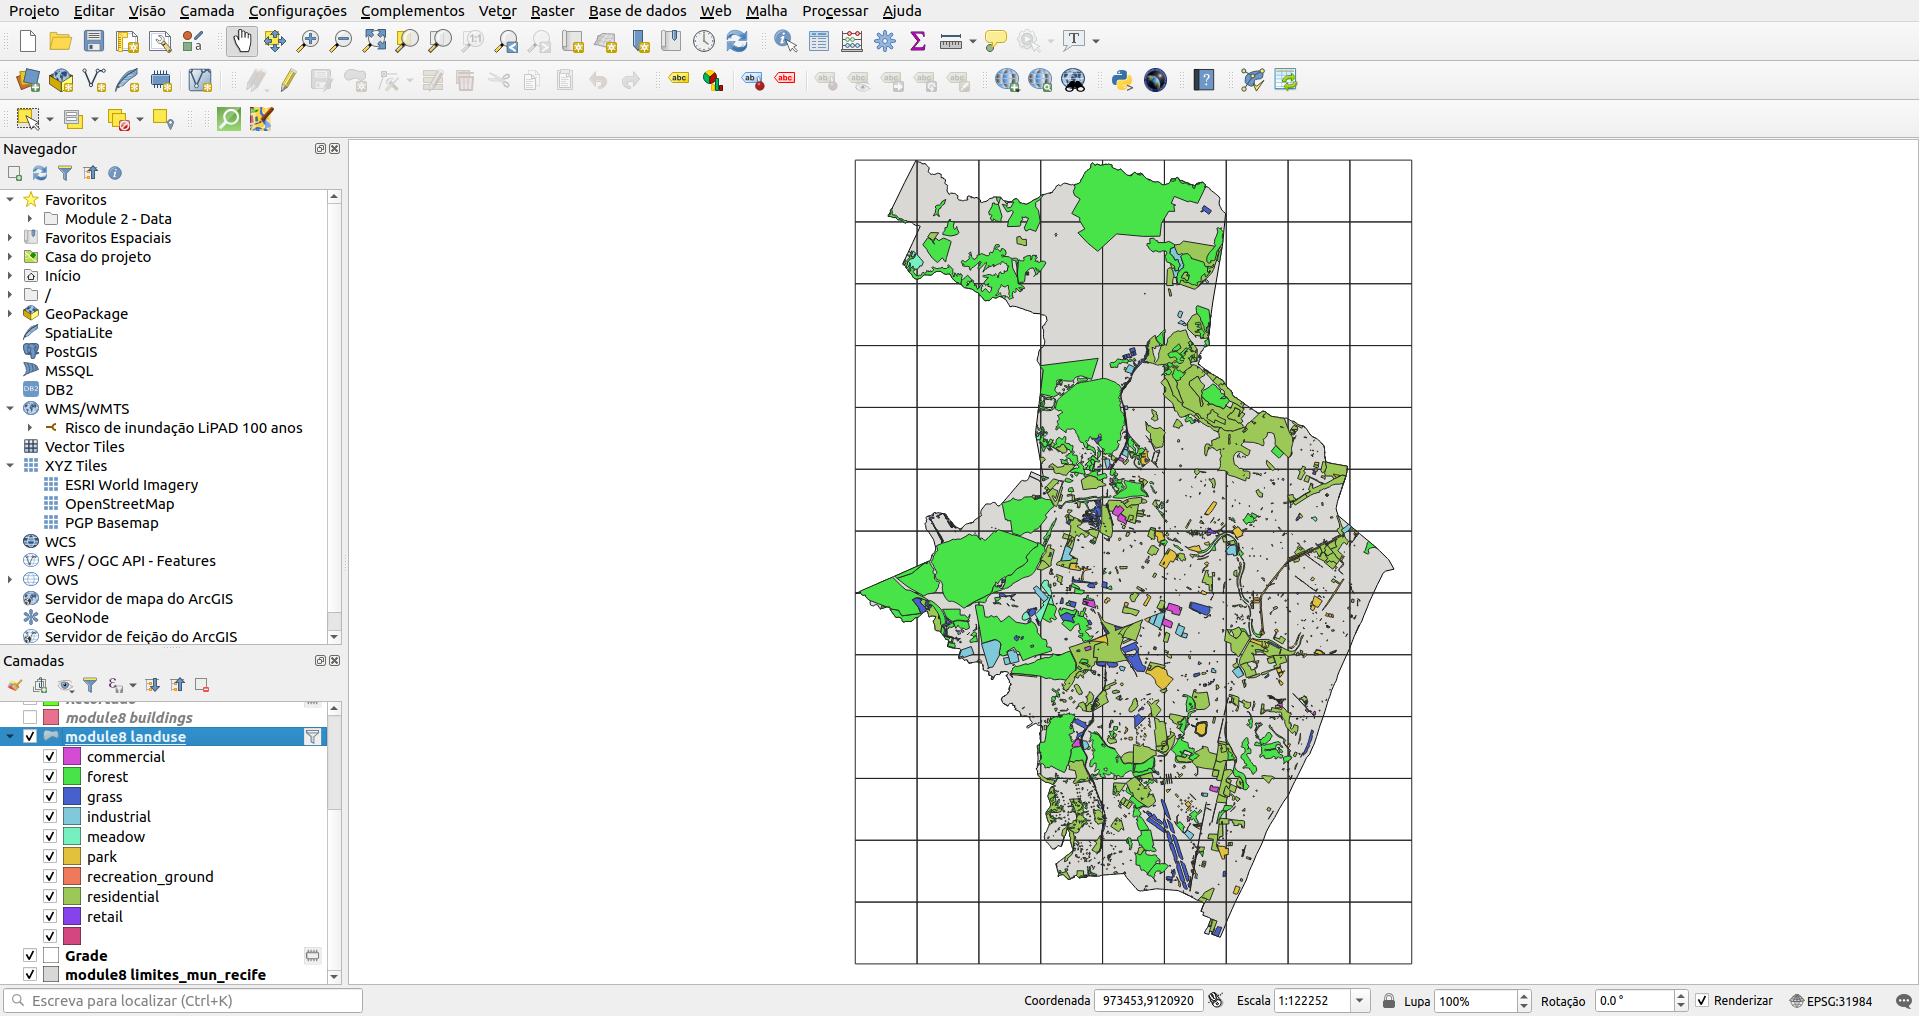 Distribuição espacial das áreas verdes e áreas construídas em Recife